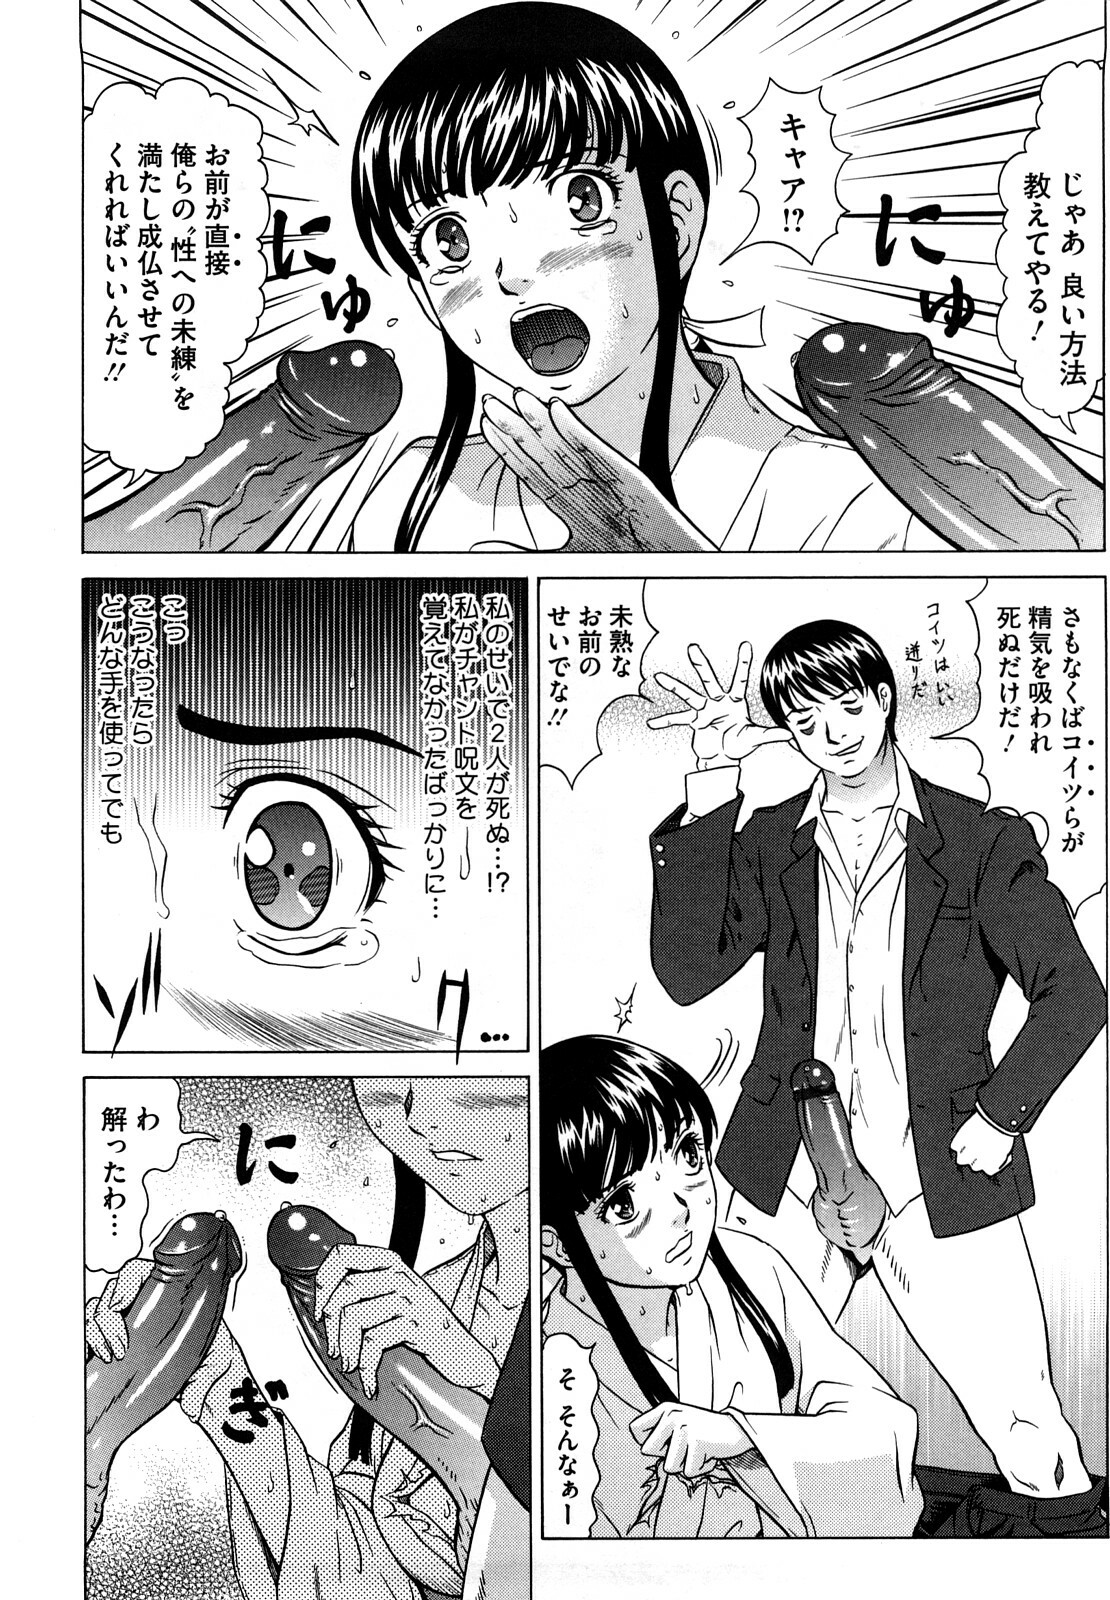 [Kurono Masakado] Nocturnal page 15 full